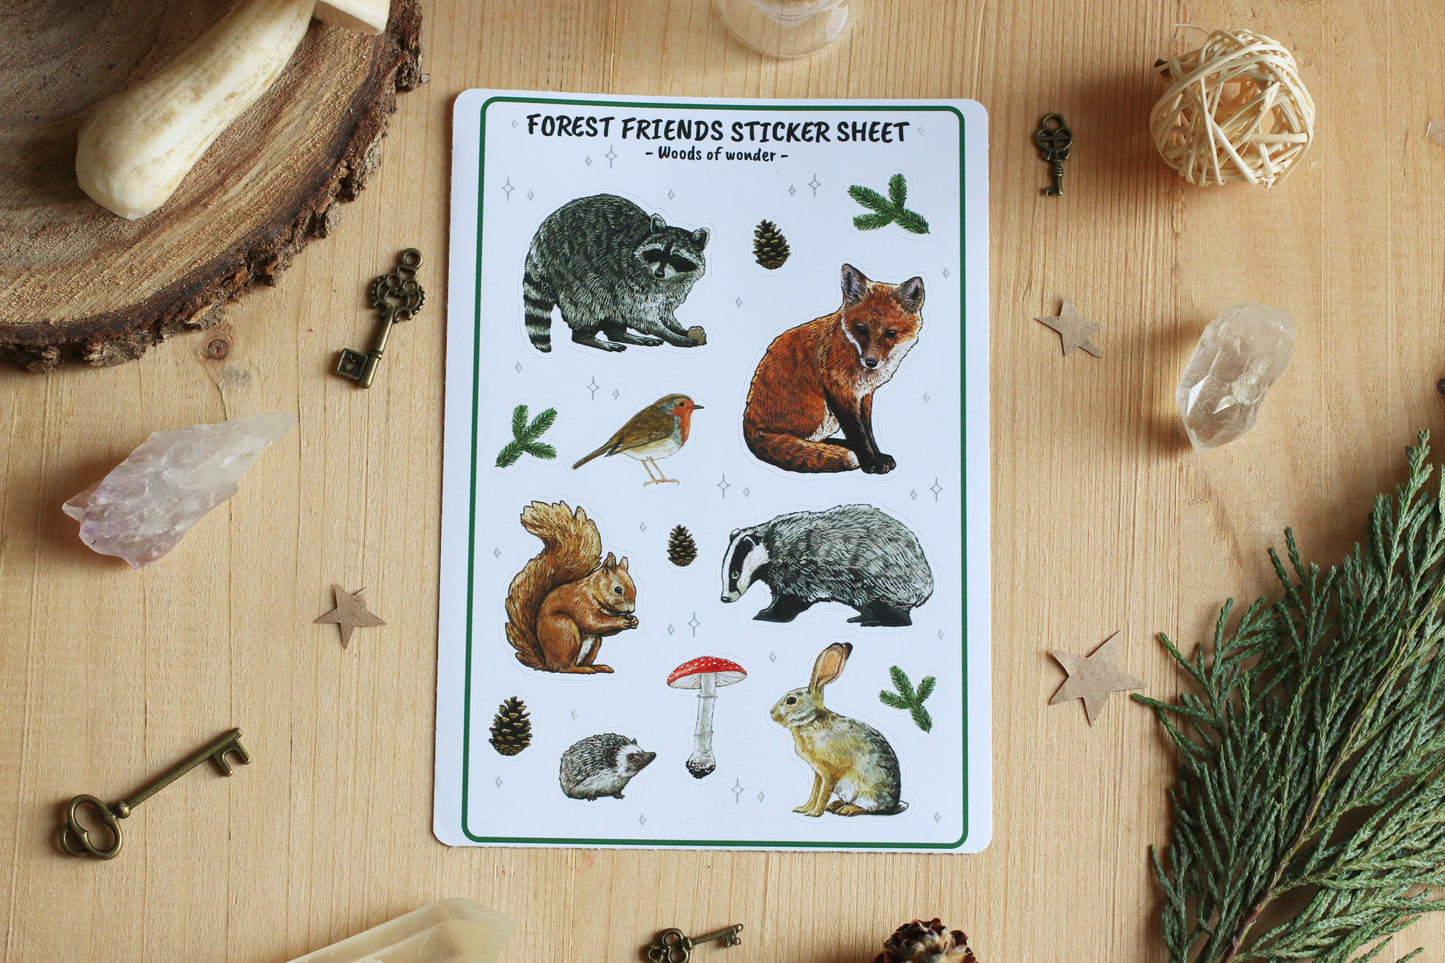 Forest friends sticker sheet / Postal owls sticker sheet - Cottagecore stickers